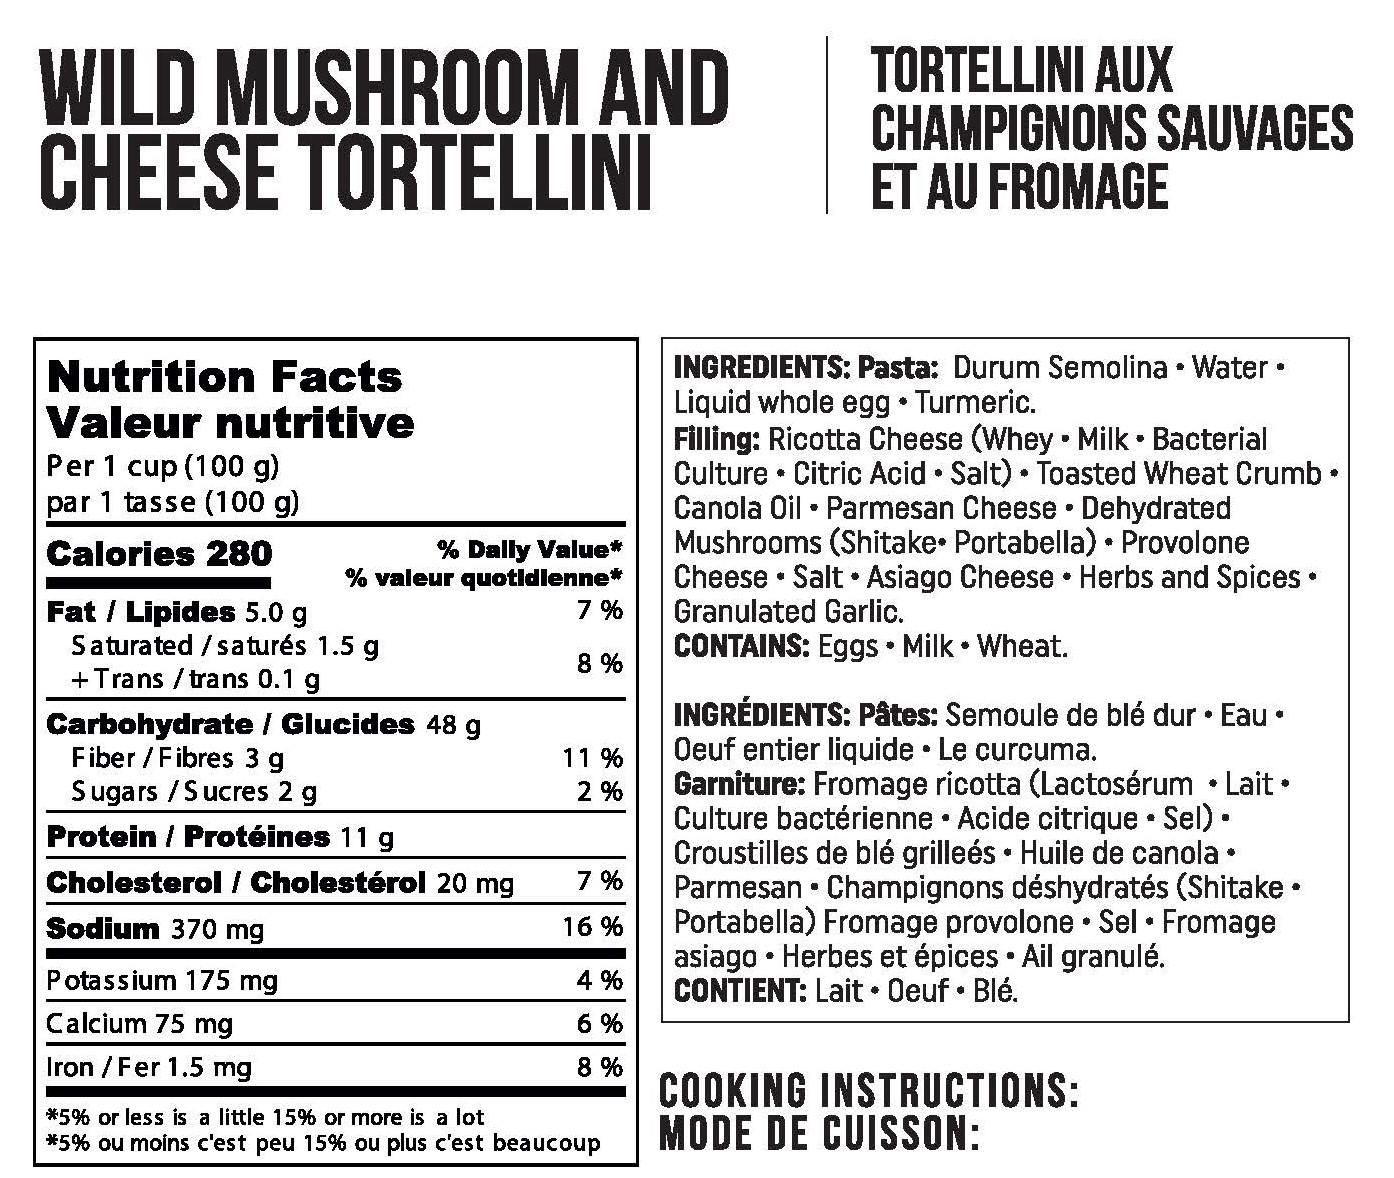 Wild Mushroom and Cheese Tortellini